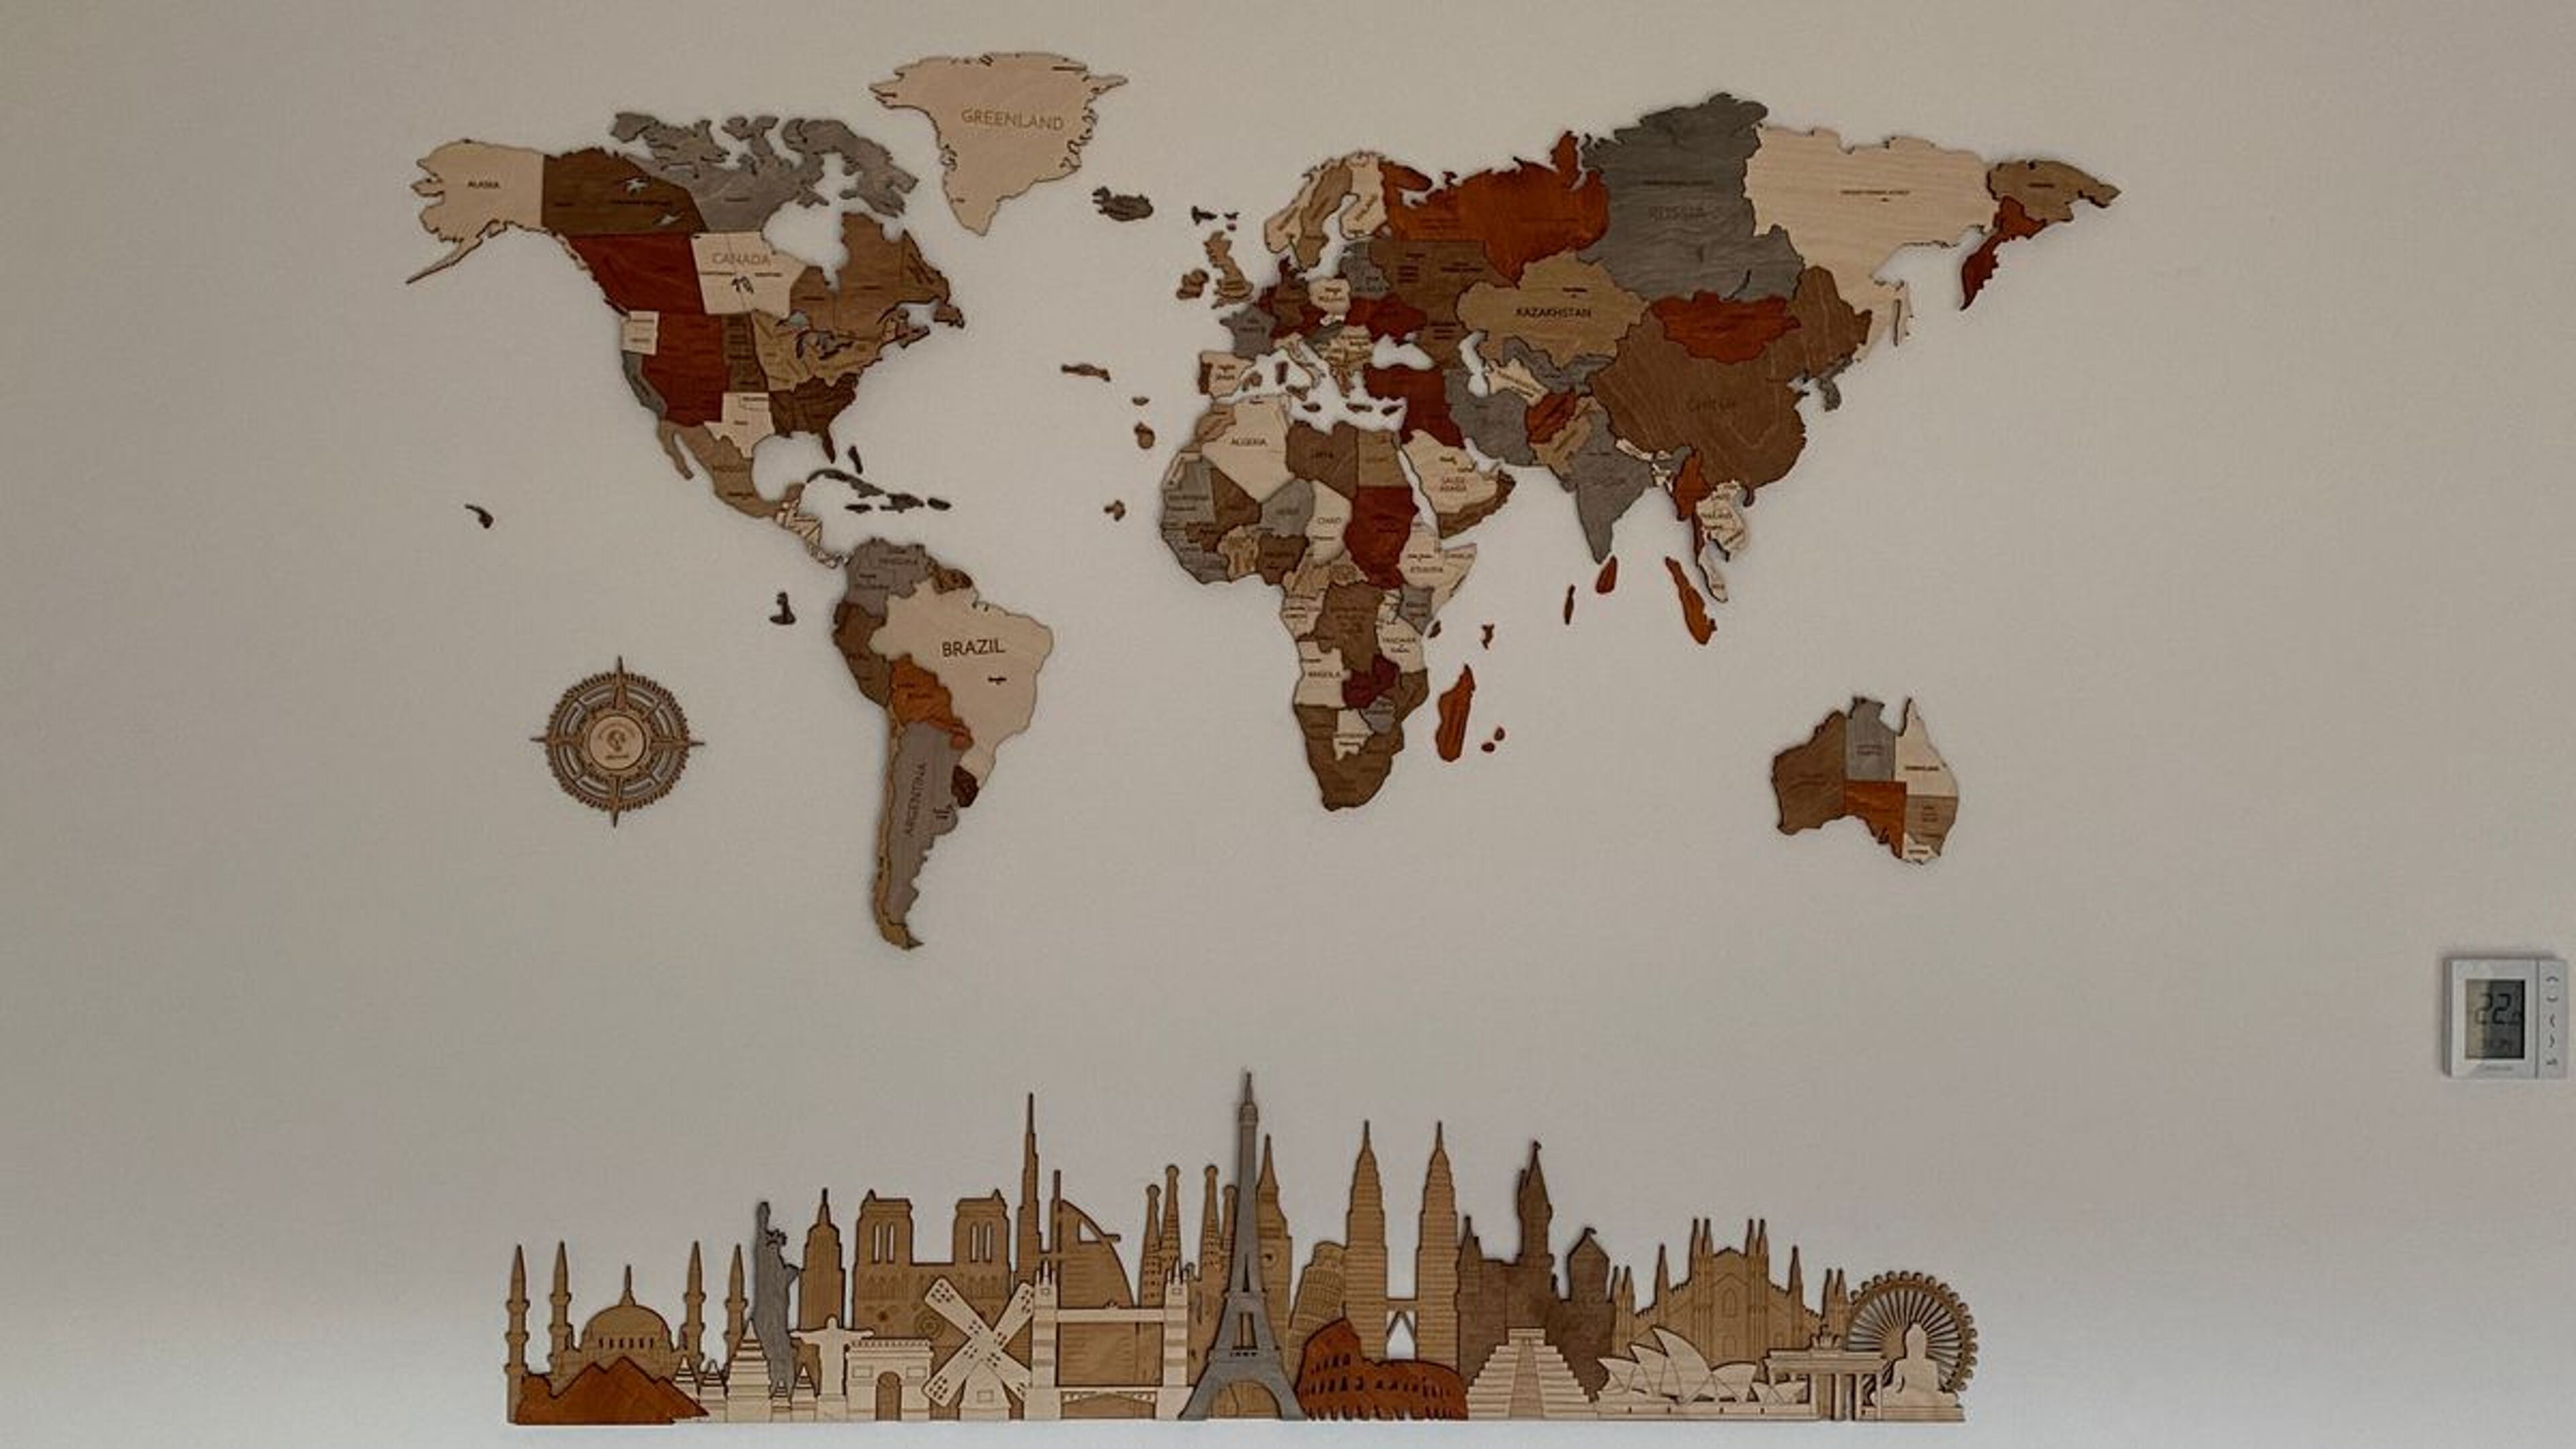 Recensione per Monumenti e attrazioni mondiali - Pannello in legno 3D - immagine da Georg Mairösl